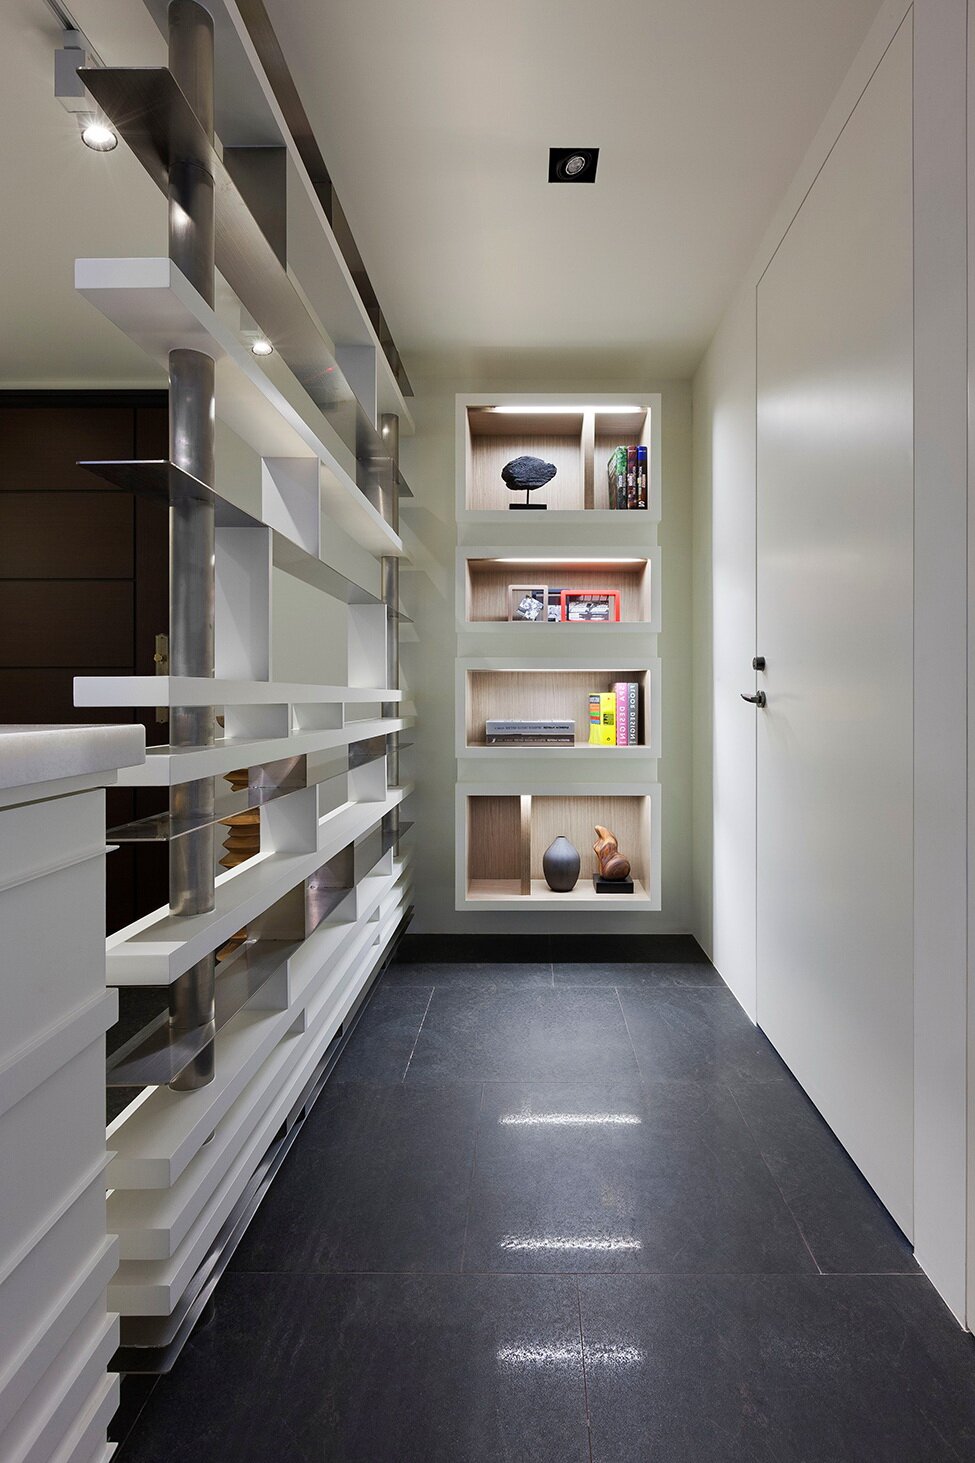 Квартира, выдержанная в стиле минимализм, создана для пары молодых людей